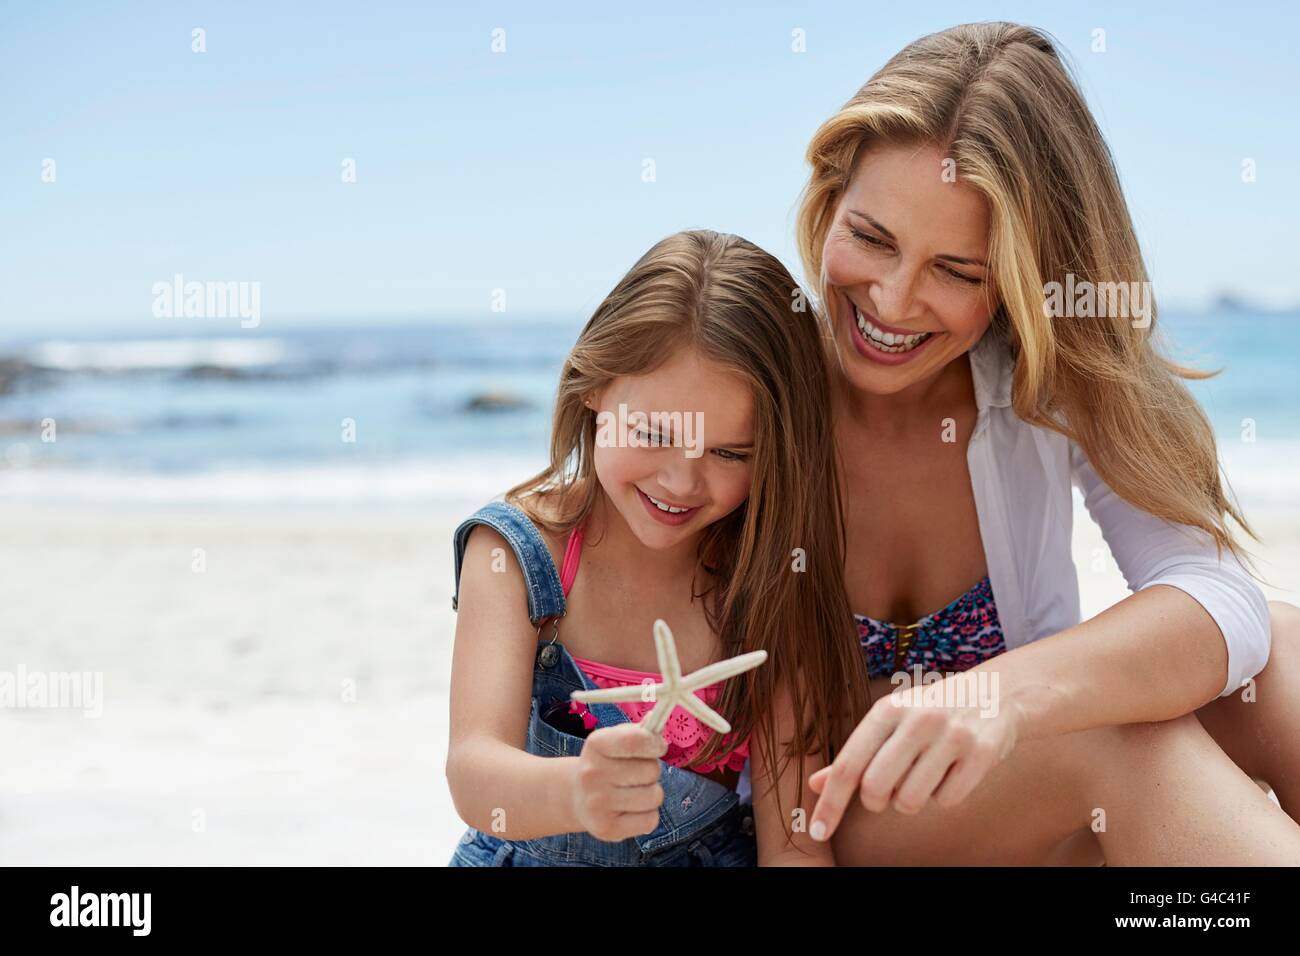 Modelo liberado. Madre con su hija en la playa con una estrella de mar. Foto de stock